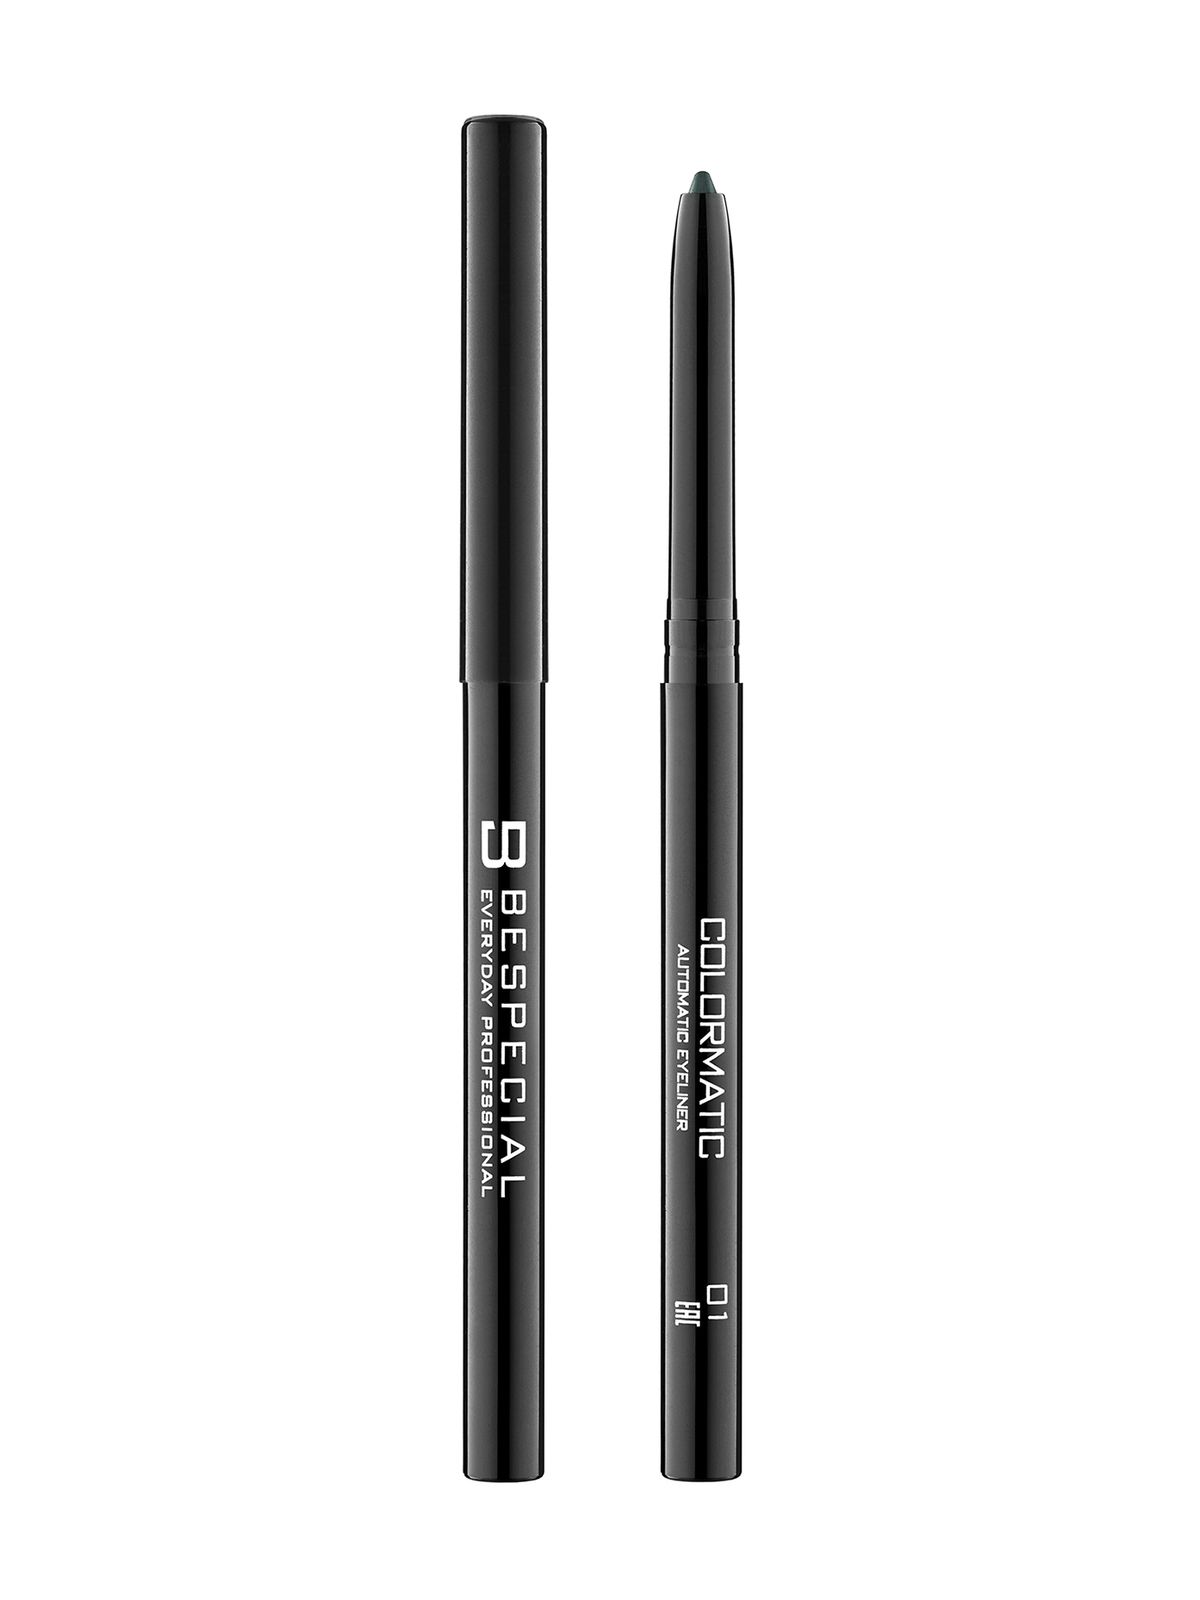 Механический карандаш для глаз Bespecial Colormatic Eye Pencil карандаш для глаз lancome drama liqui pencil 24h гелевый 01 cafe noir 1 2 г